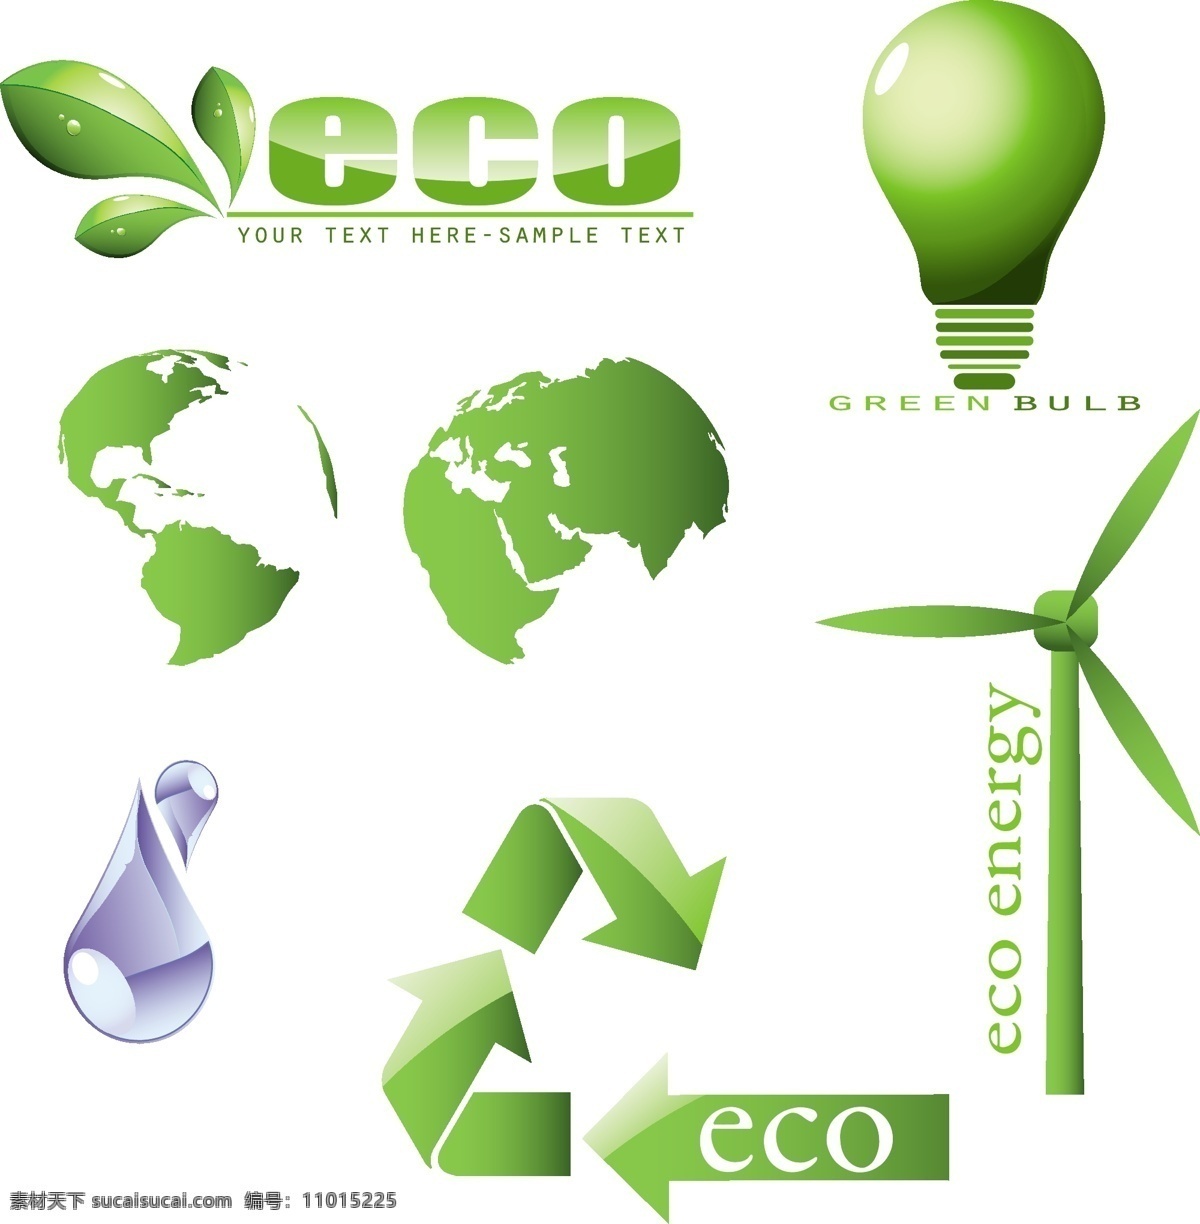 绿色环保 促销 灯泡 地球 风车 环保 树叶 水滴 绿色环保促销 循环使用 矢量图